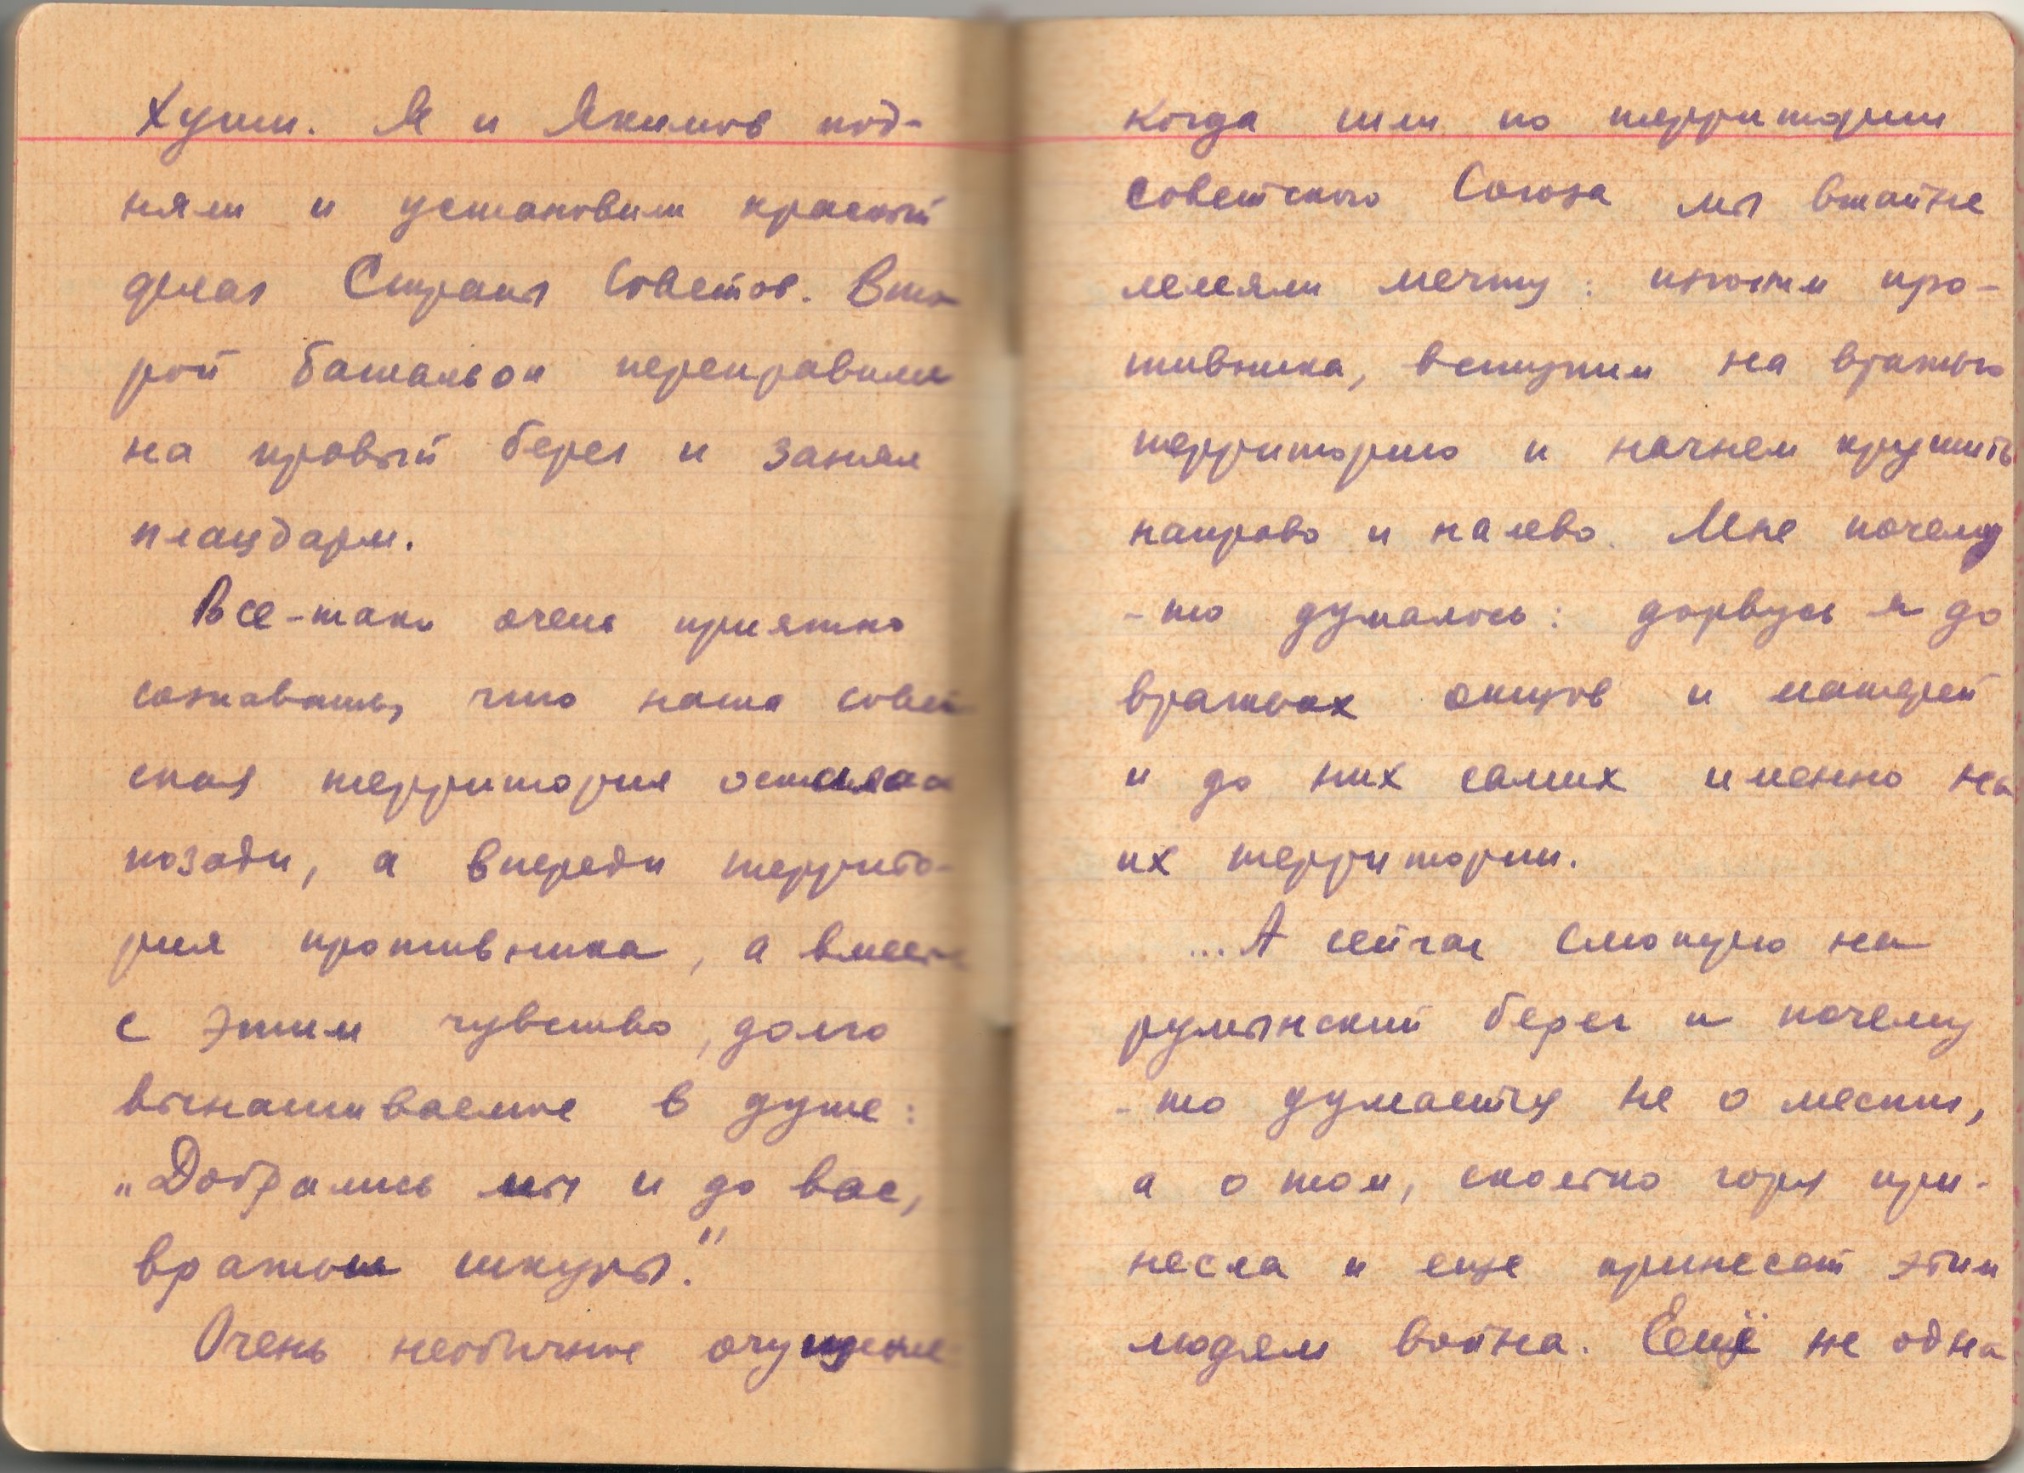 Записная книжка гвардии капитана танковых войск Савушкина Ф.А. 1945 год.